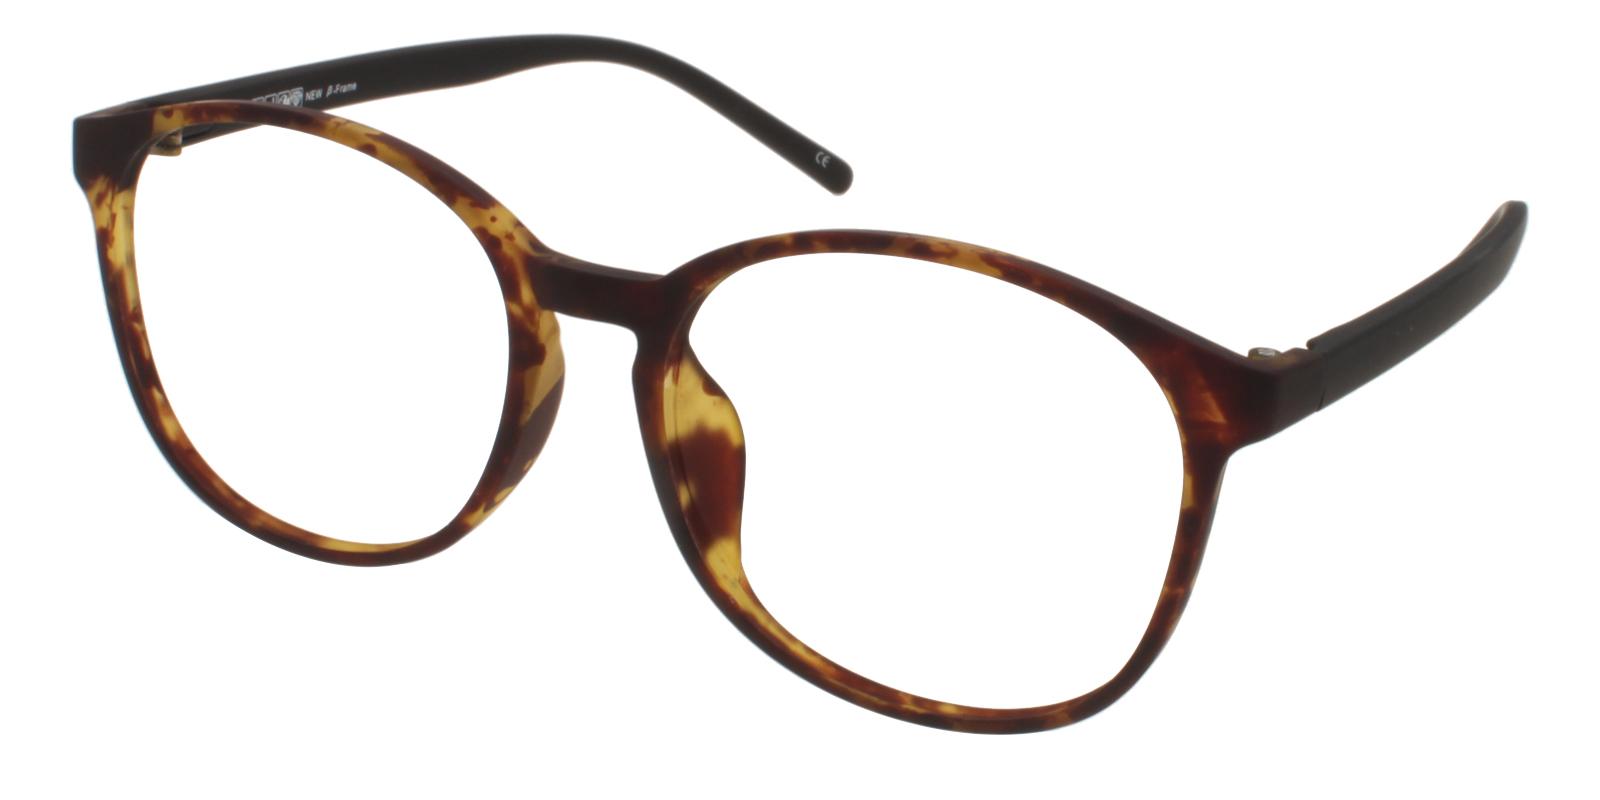 Dominica Tortoise TR Lightweight , UniversalBridgeFit , Eyeglasses Frames from ABBE Glasses